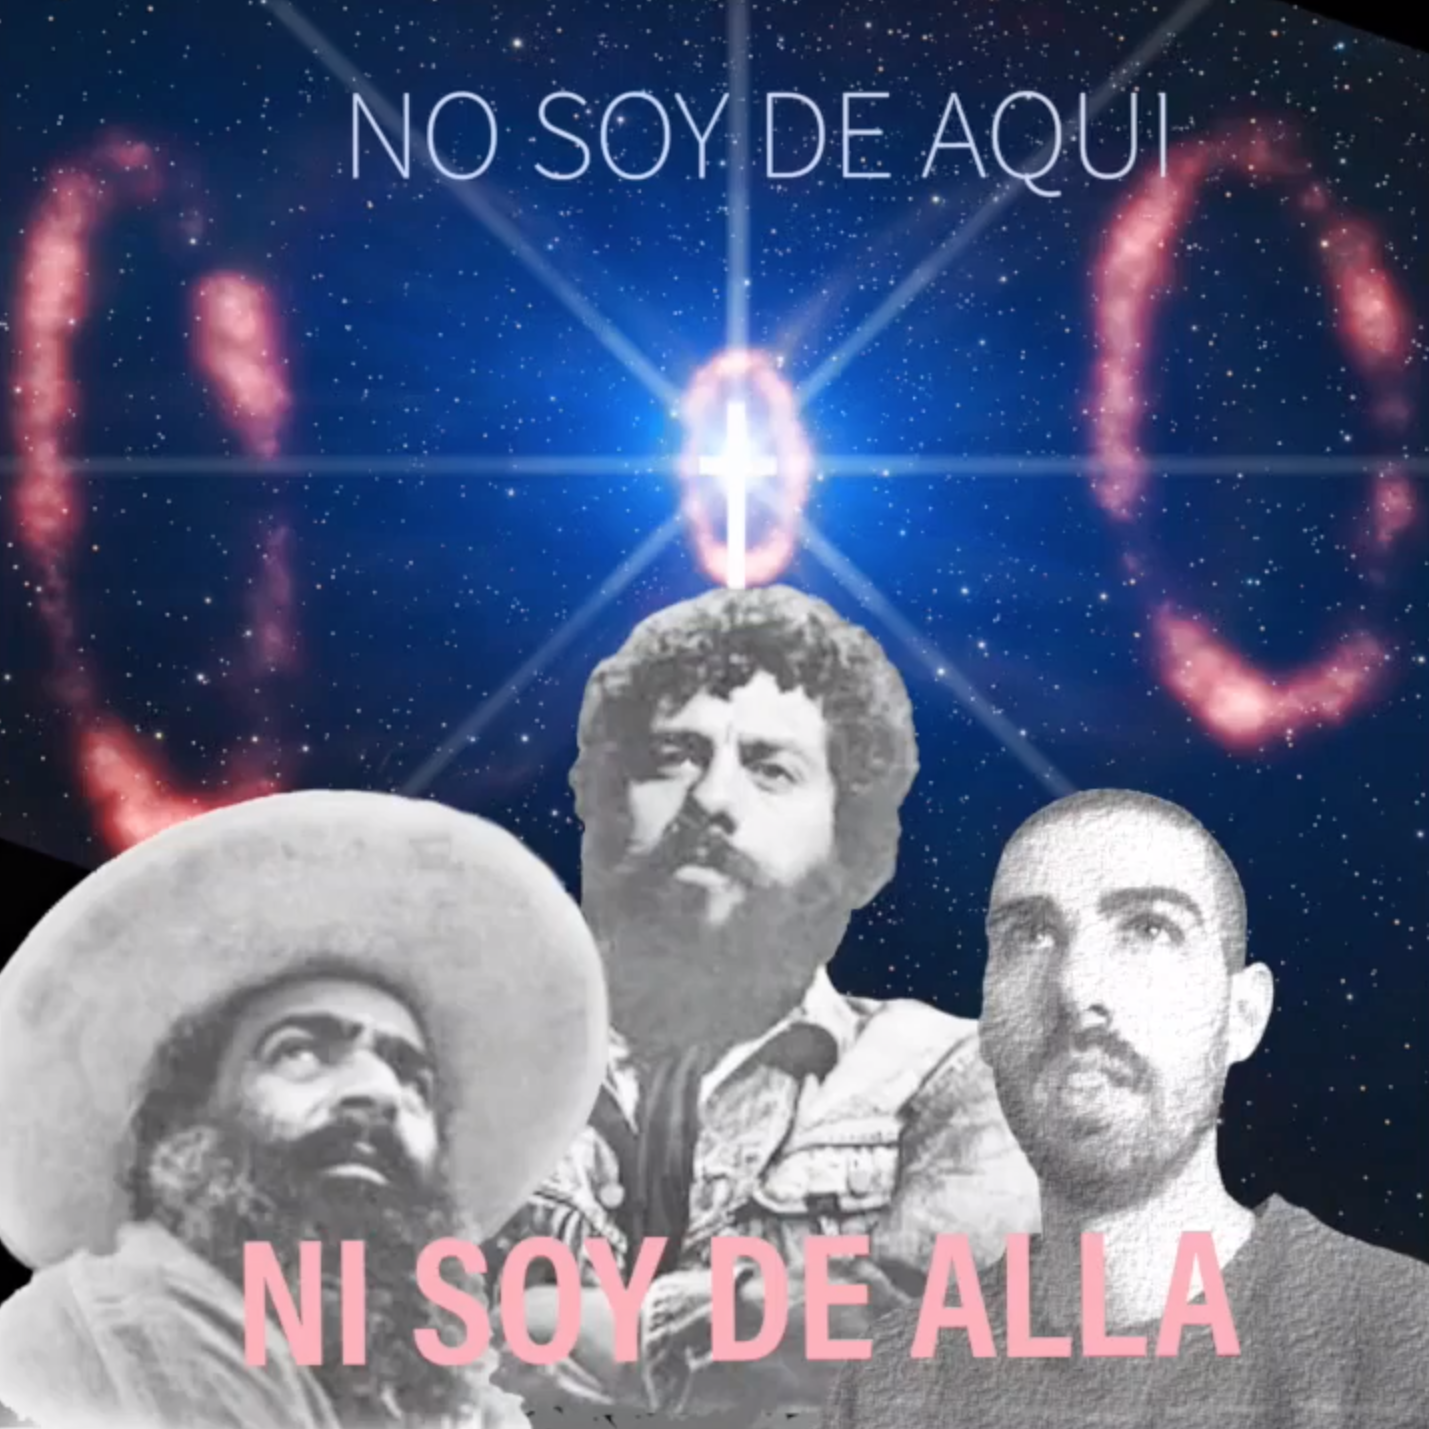 29. Amigo Ivo - NO SOY DE AQUI NI SOY DE ALLA (Música Ayahuasca)